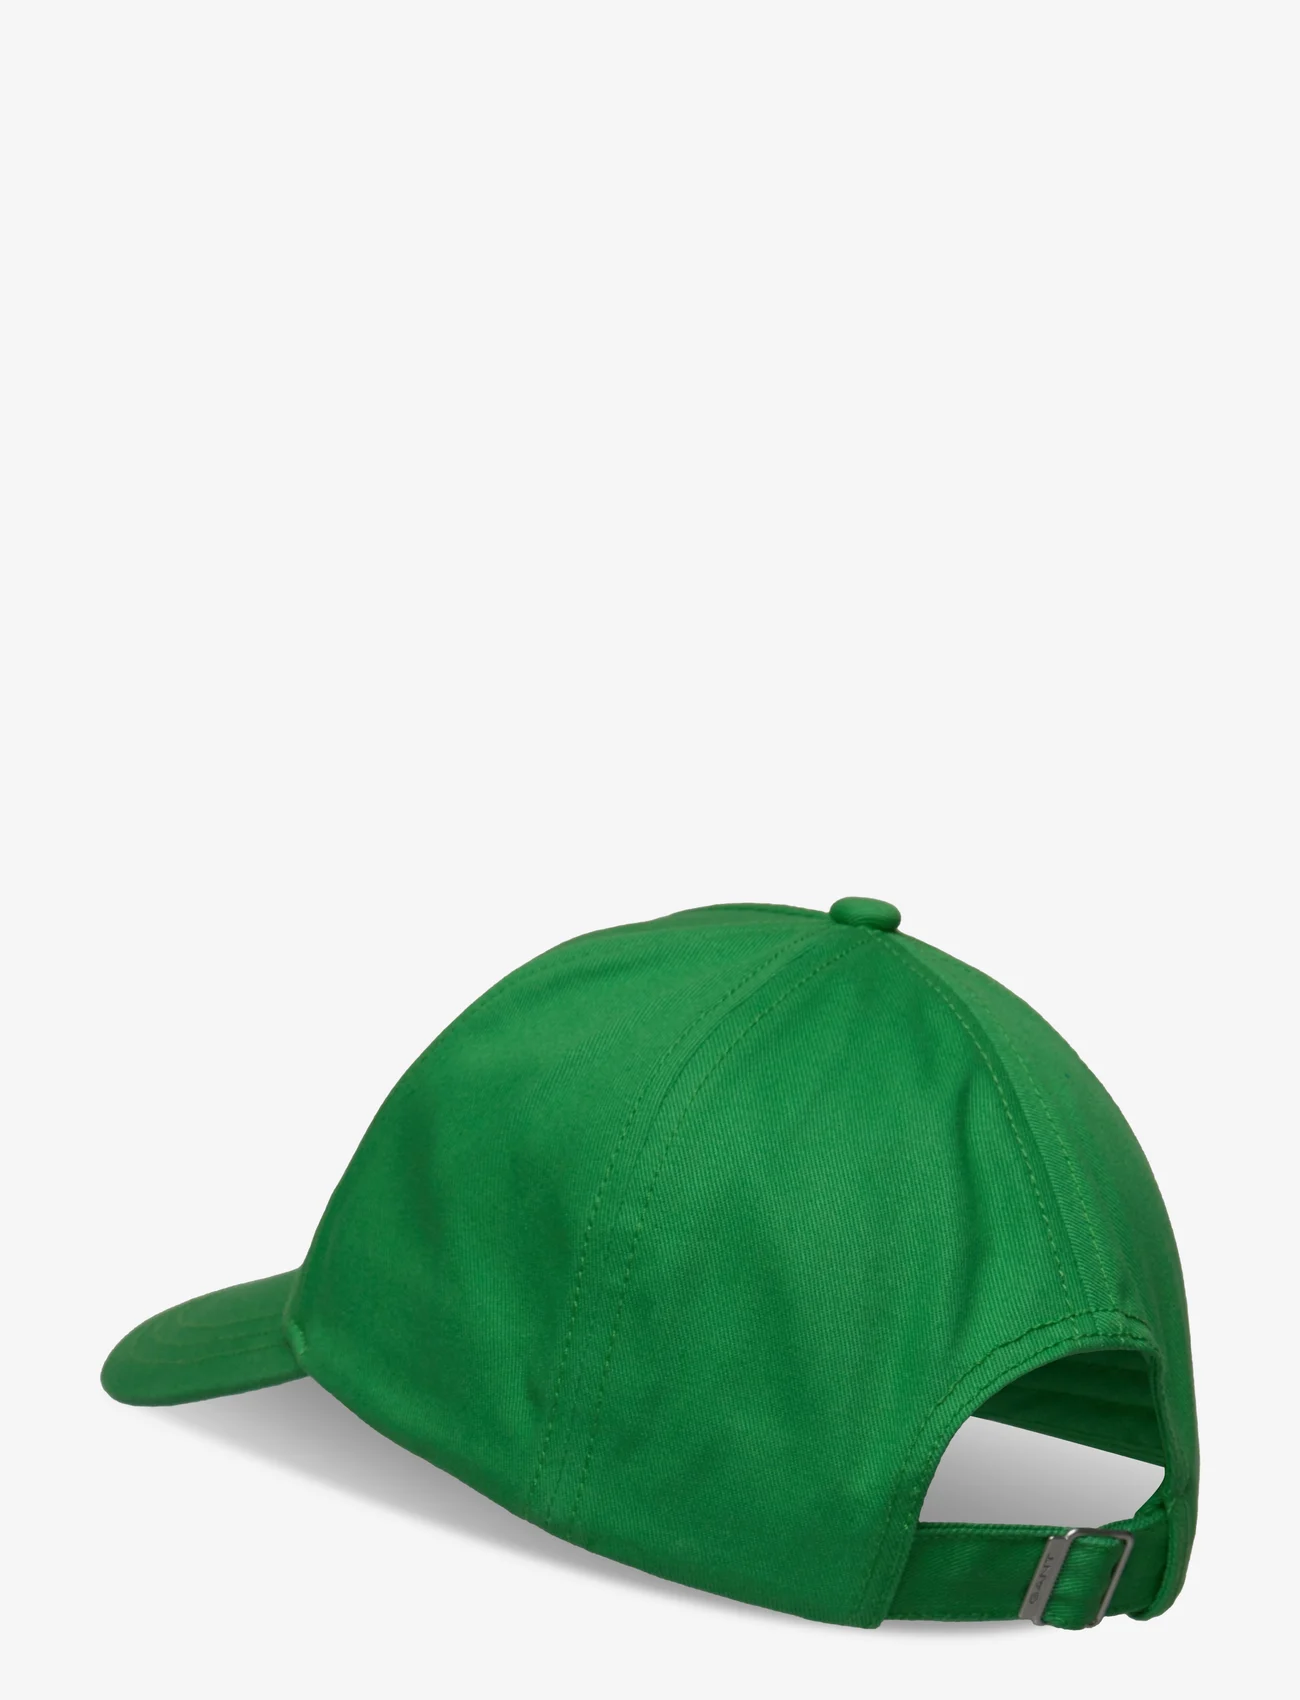 GANT - D1. ORIGINAL SHIELD CAP - mid green - 1